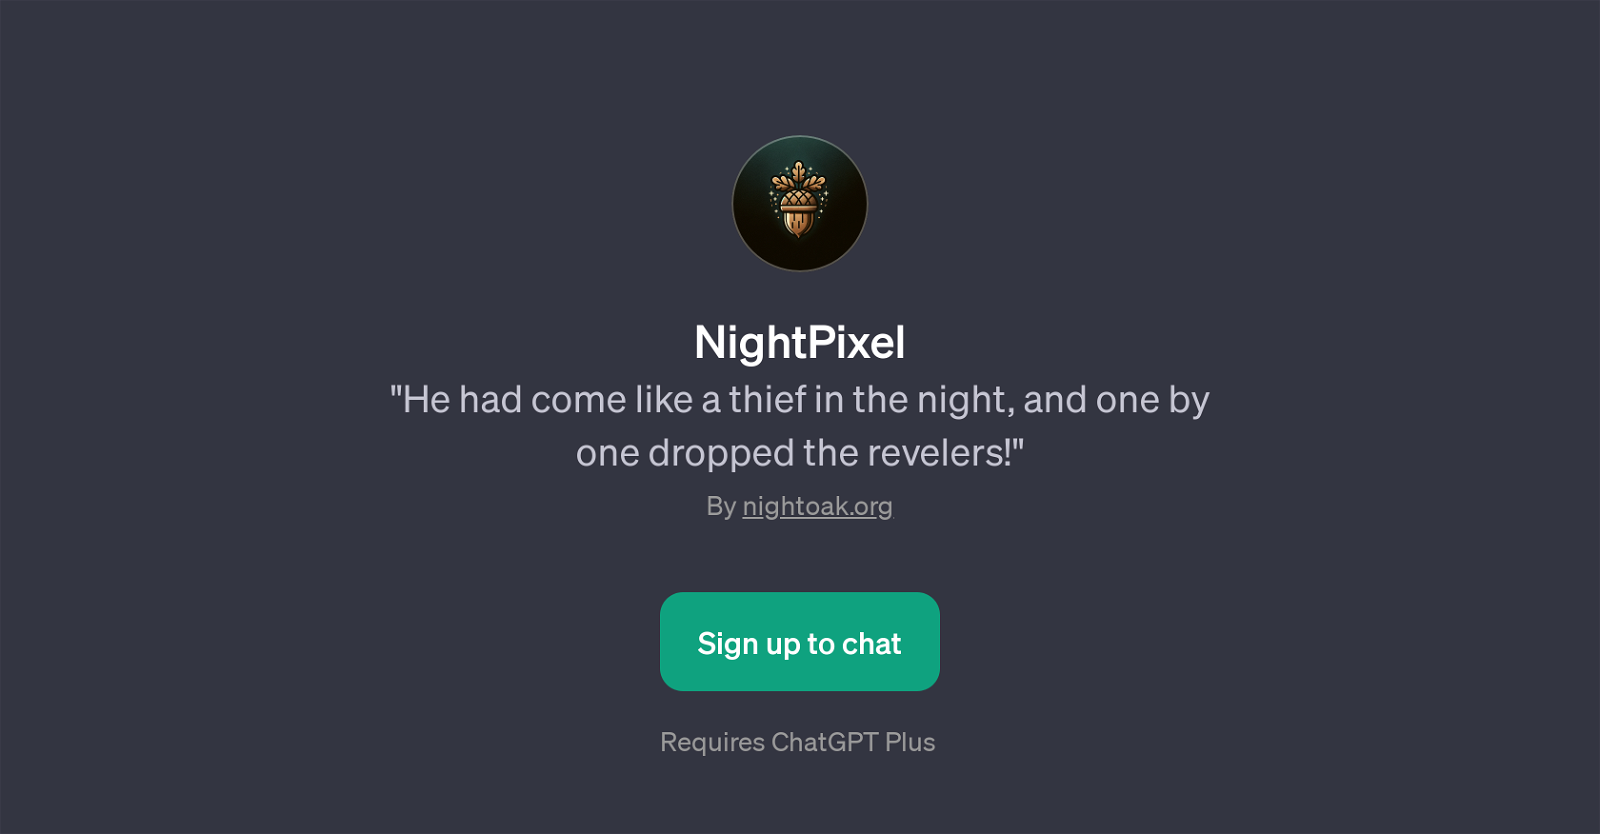 NightPixel website